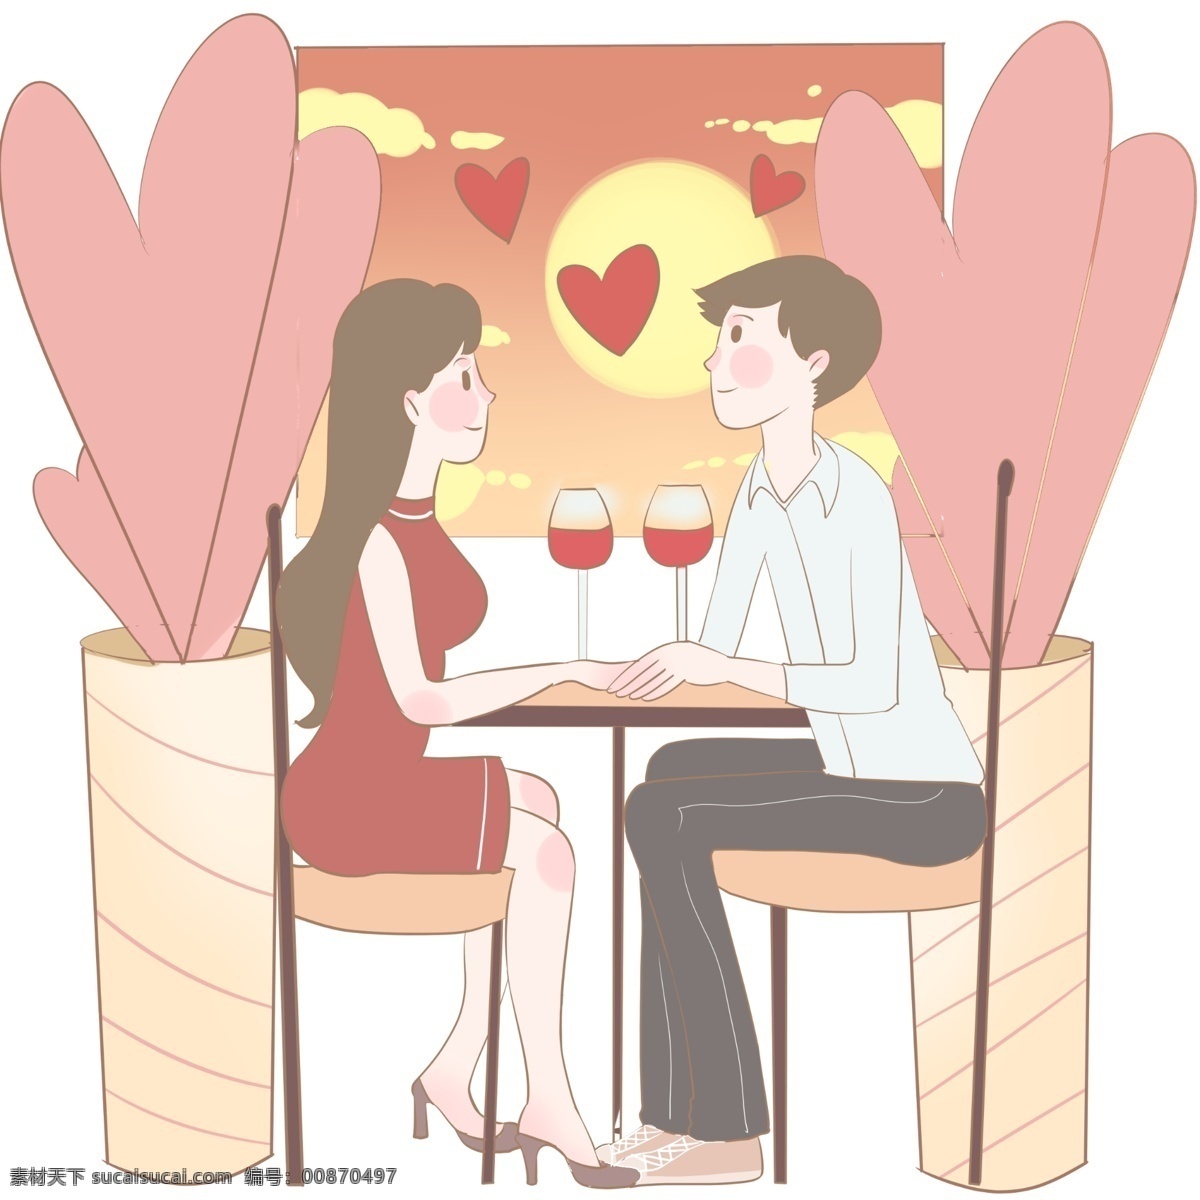 黄昏 餐厅 红酒 配 爱情 情人节 夕阳西下 牵手 高脚杯 氛围到位 黄昏求爱 幸福 粉色装饰 红色包臀裙子 白色衬衫